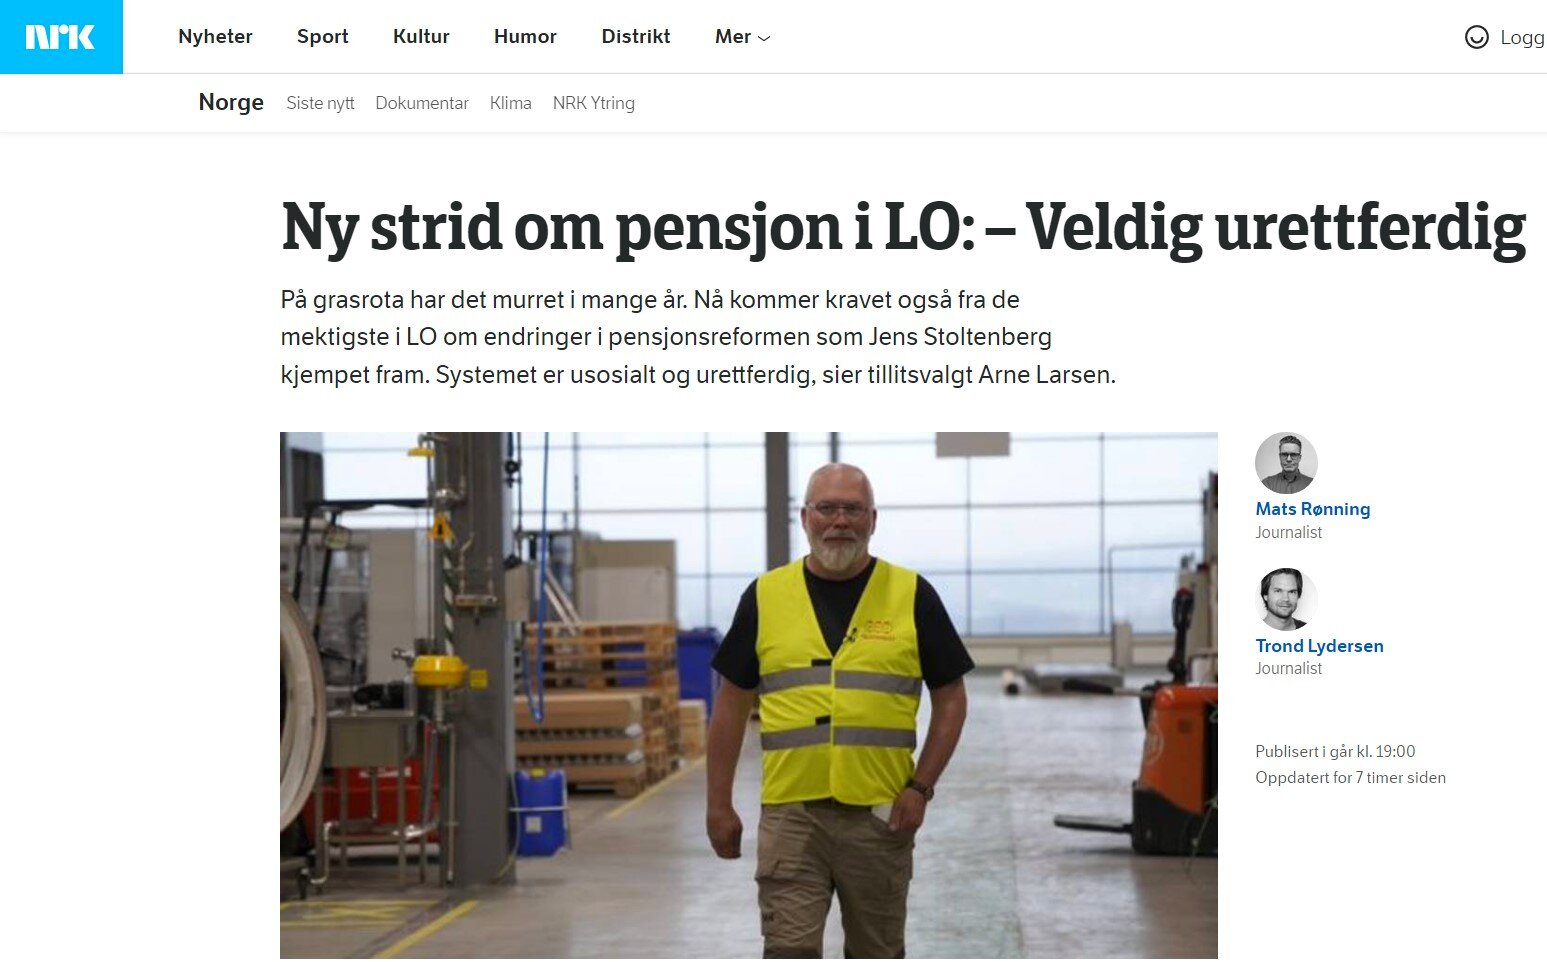 Faksimile av nettsaken "Ny strid om pensjon i LO" på nrk.no